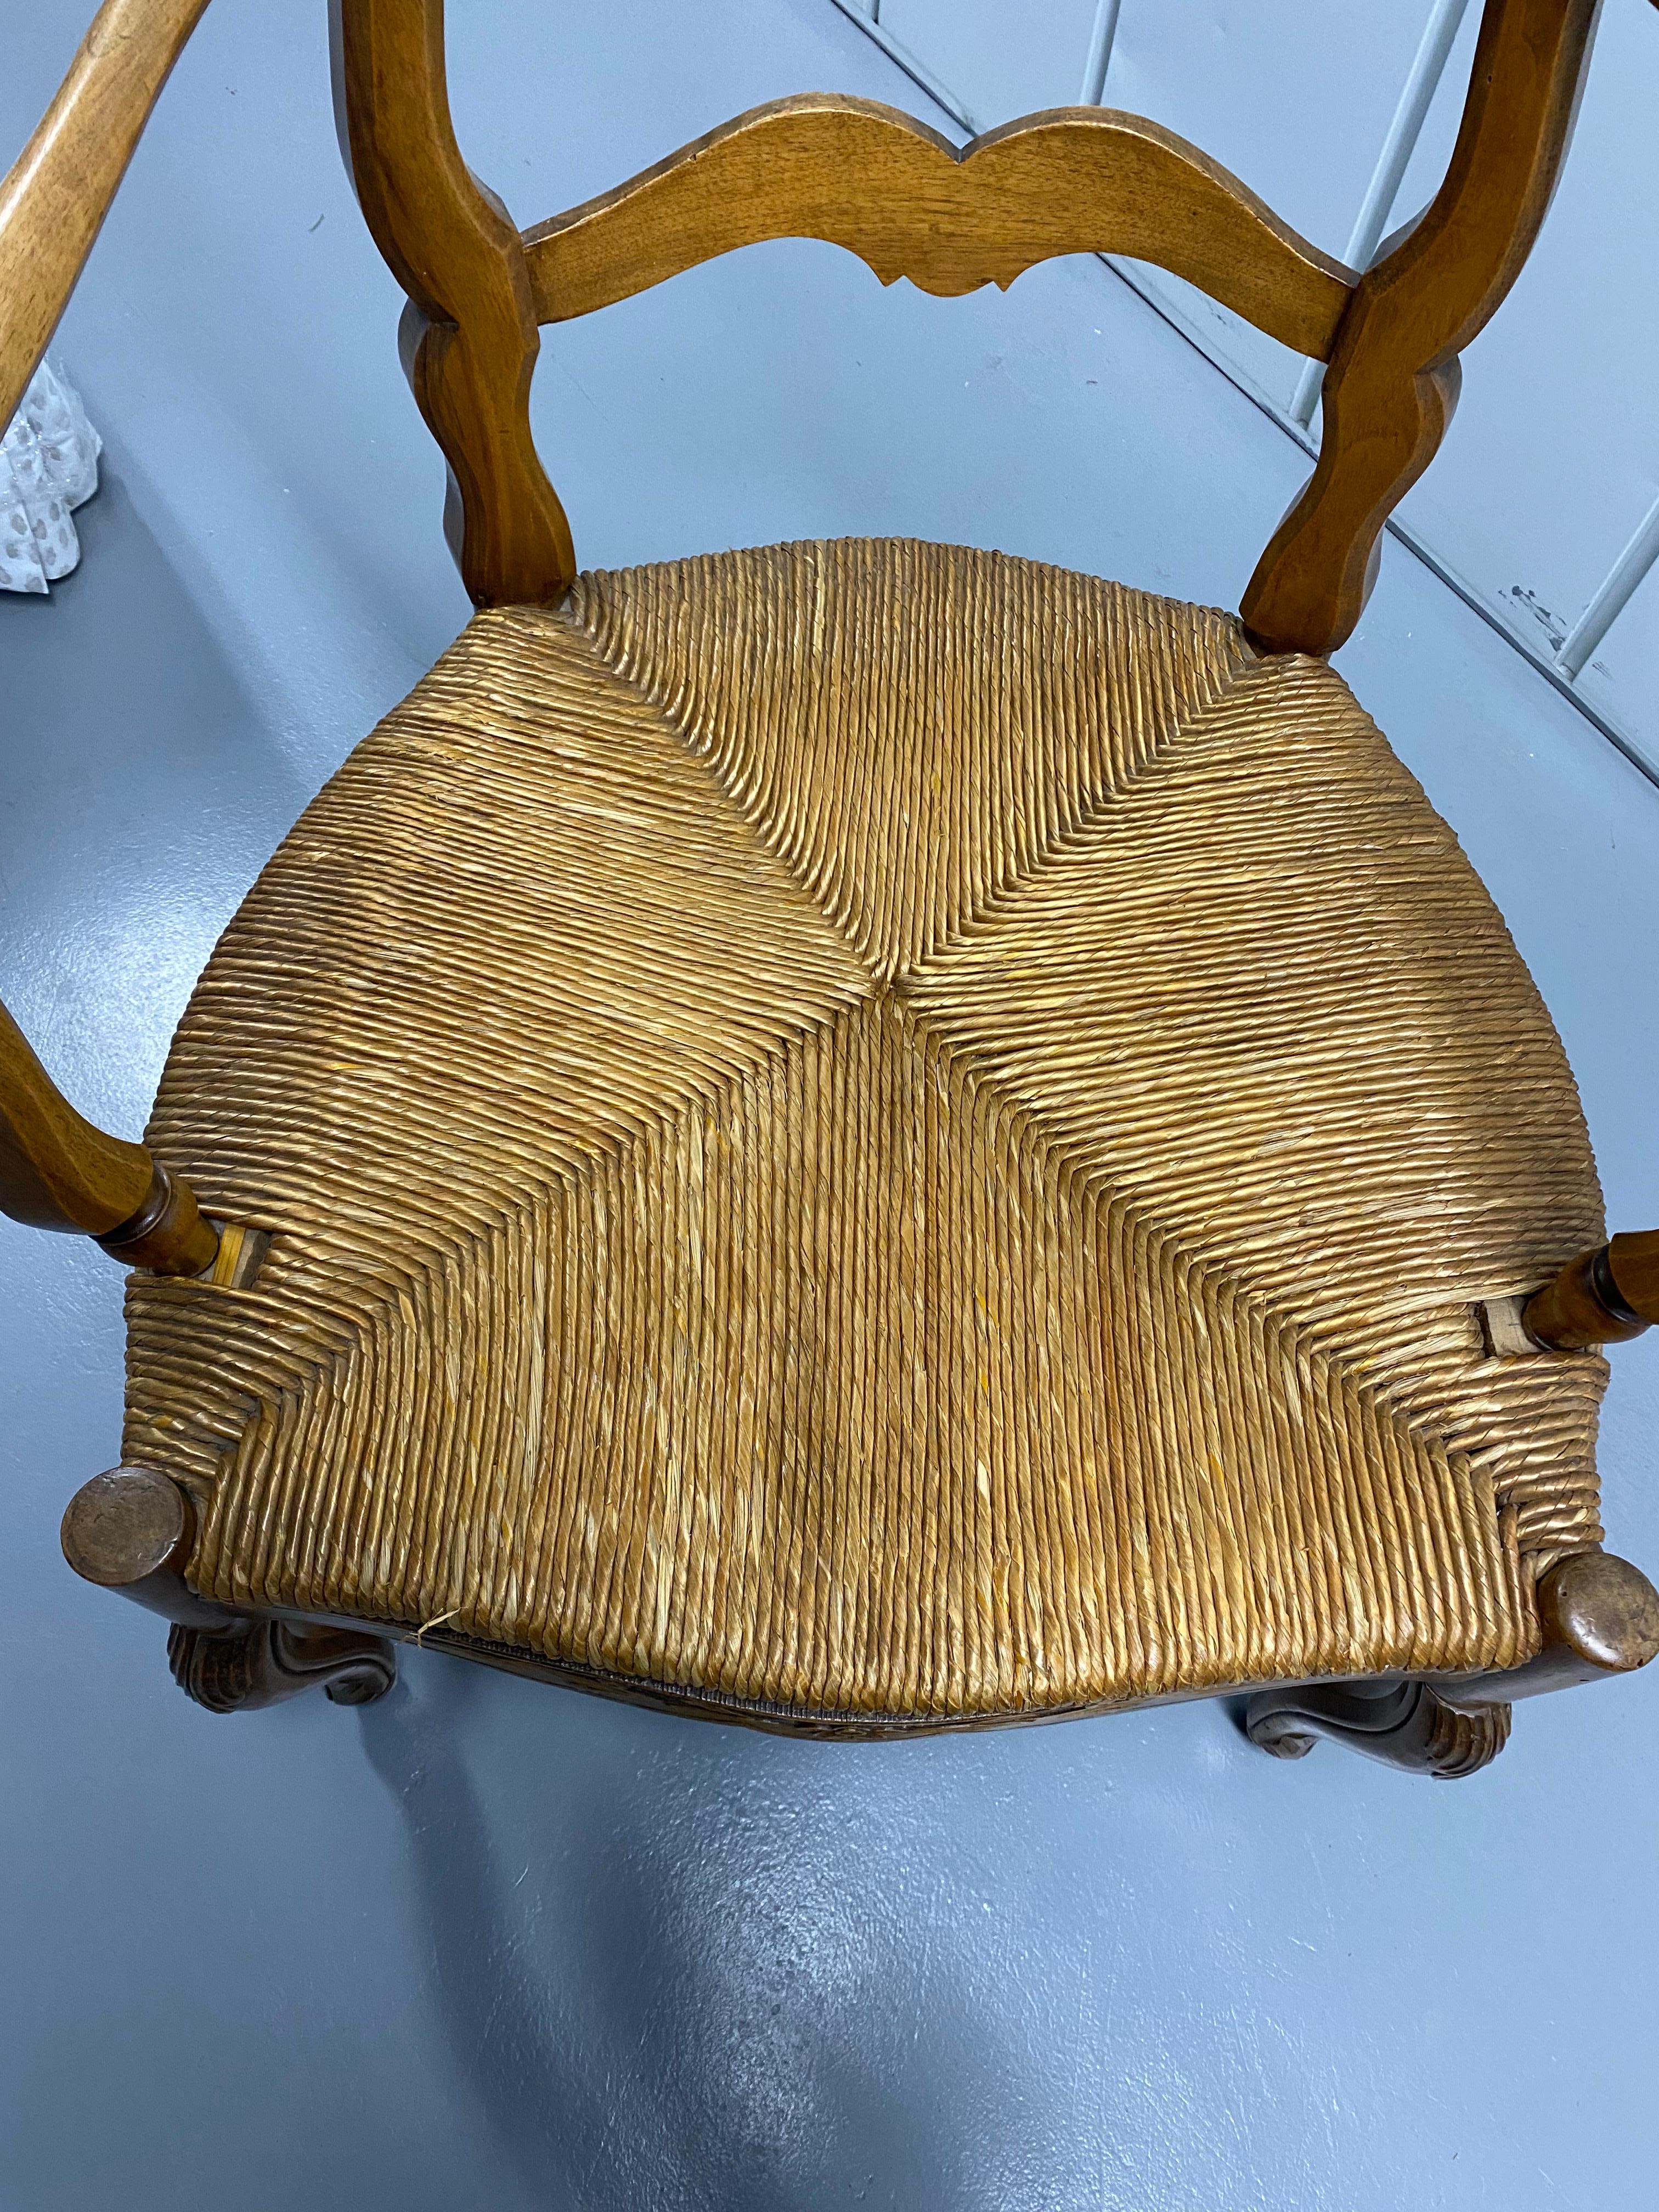 Sieben französische provenzalische Leiterstühle aus Nussbaum mit Binsenbezug, 19. Jahrhundert, um 1880.
Nussbaum Leiter zurück Holzrahmen mit geschnitzten Laub auf der unteren Bahre und Cabriole Beine. Sitze aus gewebtem Binsen. Insgesamt guter